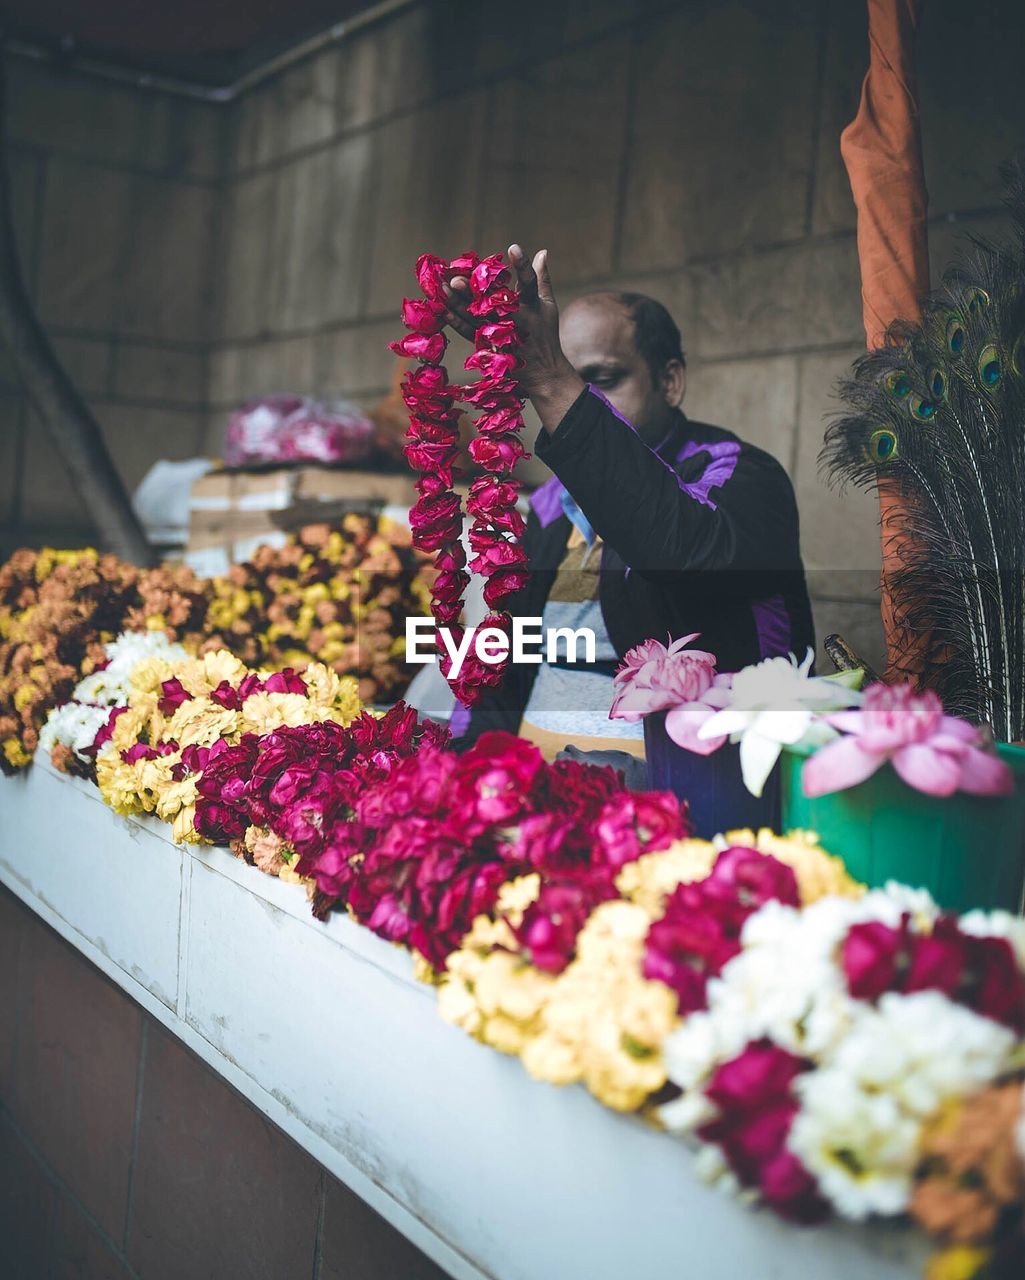 Vendor selling floral garlands at shop